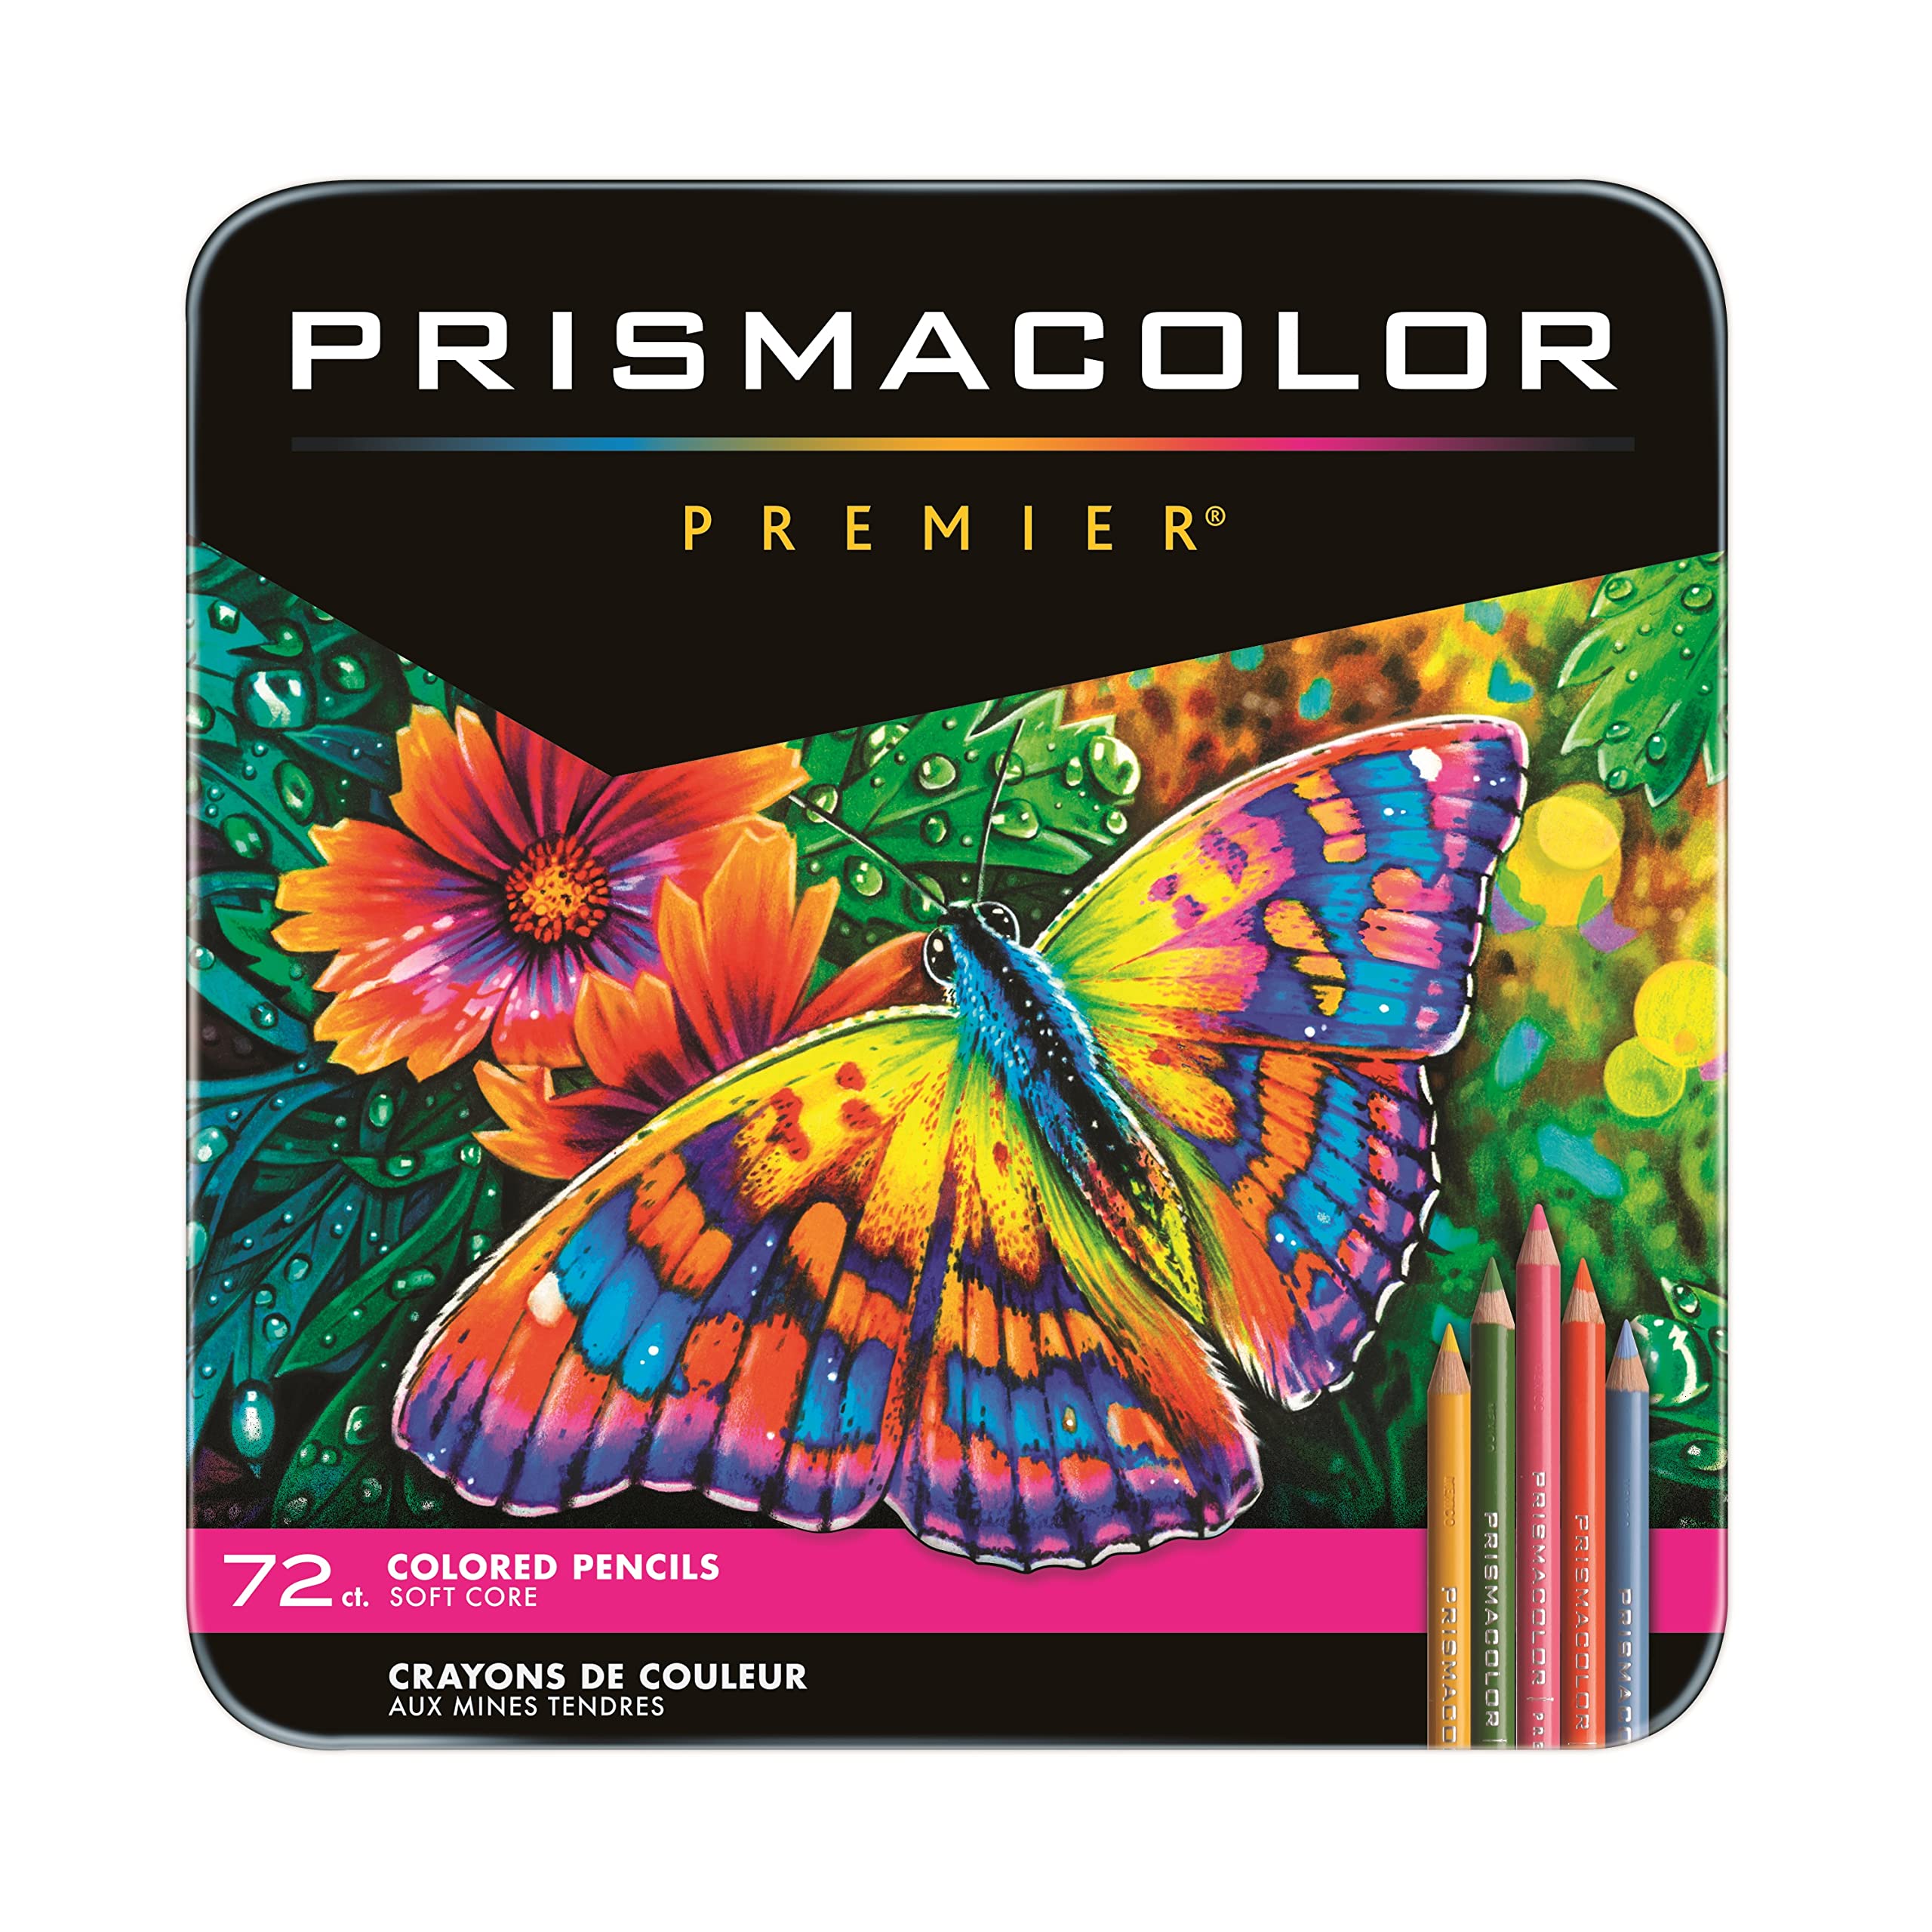 Prismacolor プレミア色鉛筆